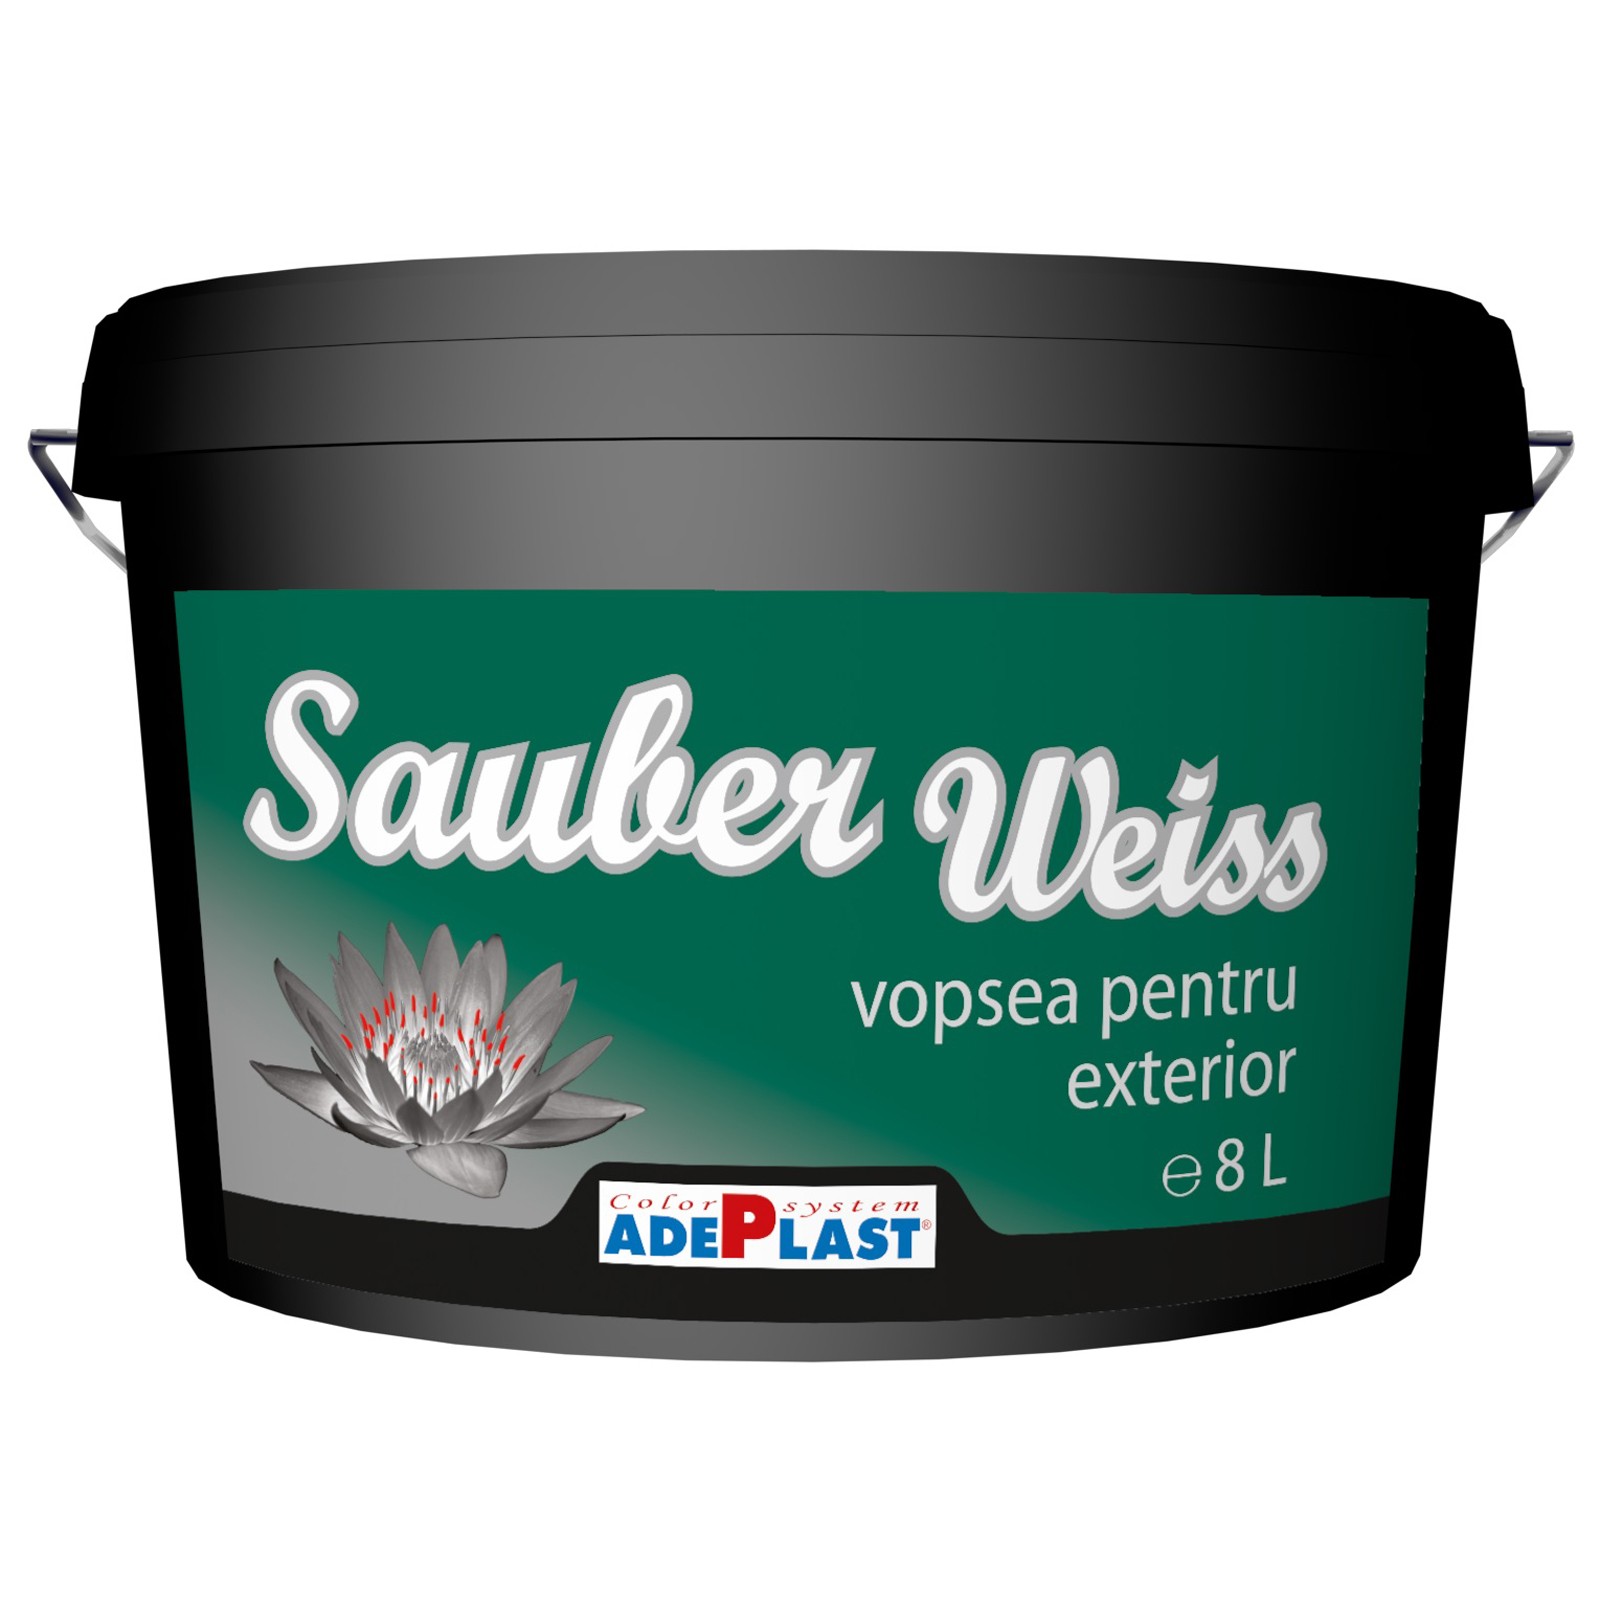 Vopseluri - Vopsea lavabila pentru exterior Adeplast Sauber Weiss alba 8L, maxbau.ro